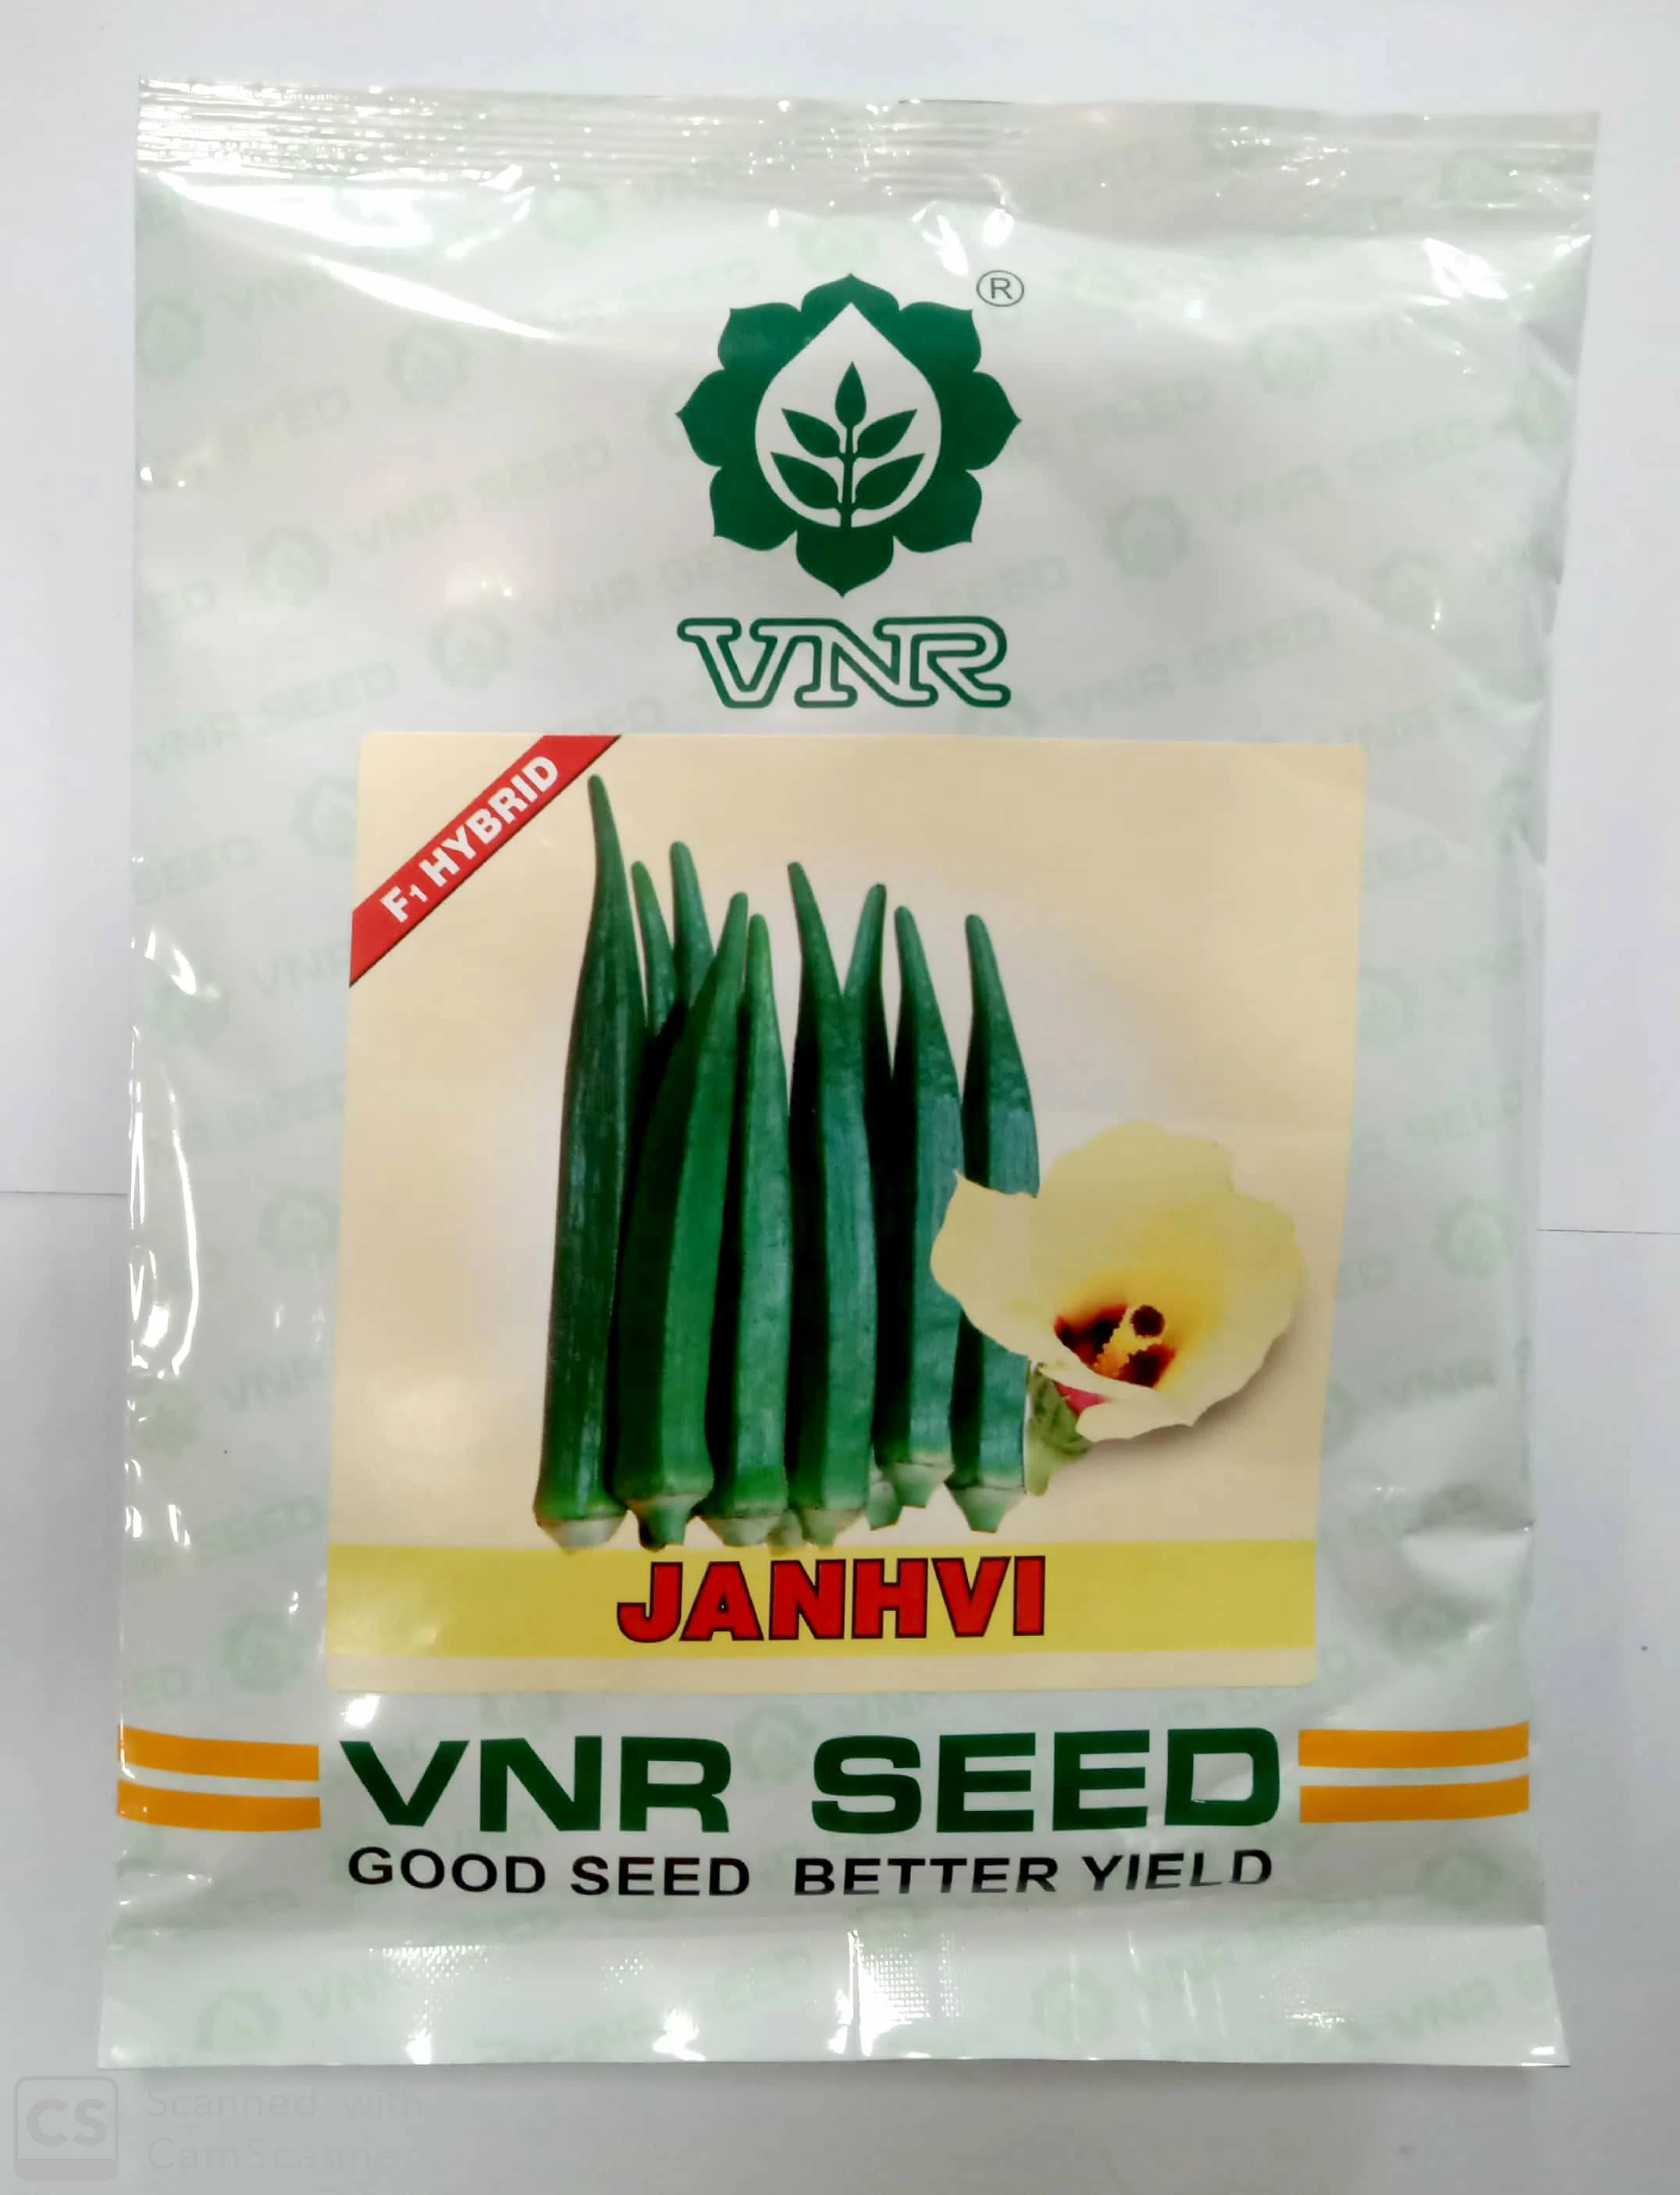 Bhindi Janhvi F1 Vnr Seeds